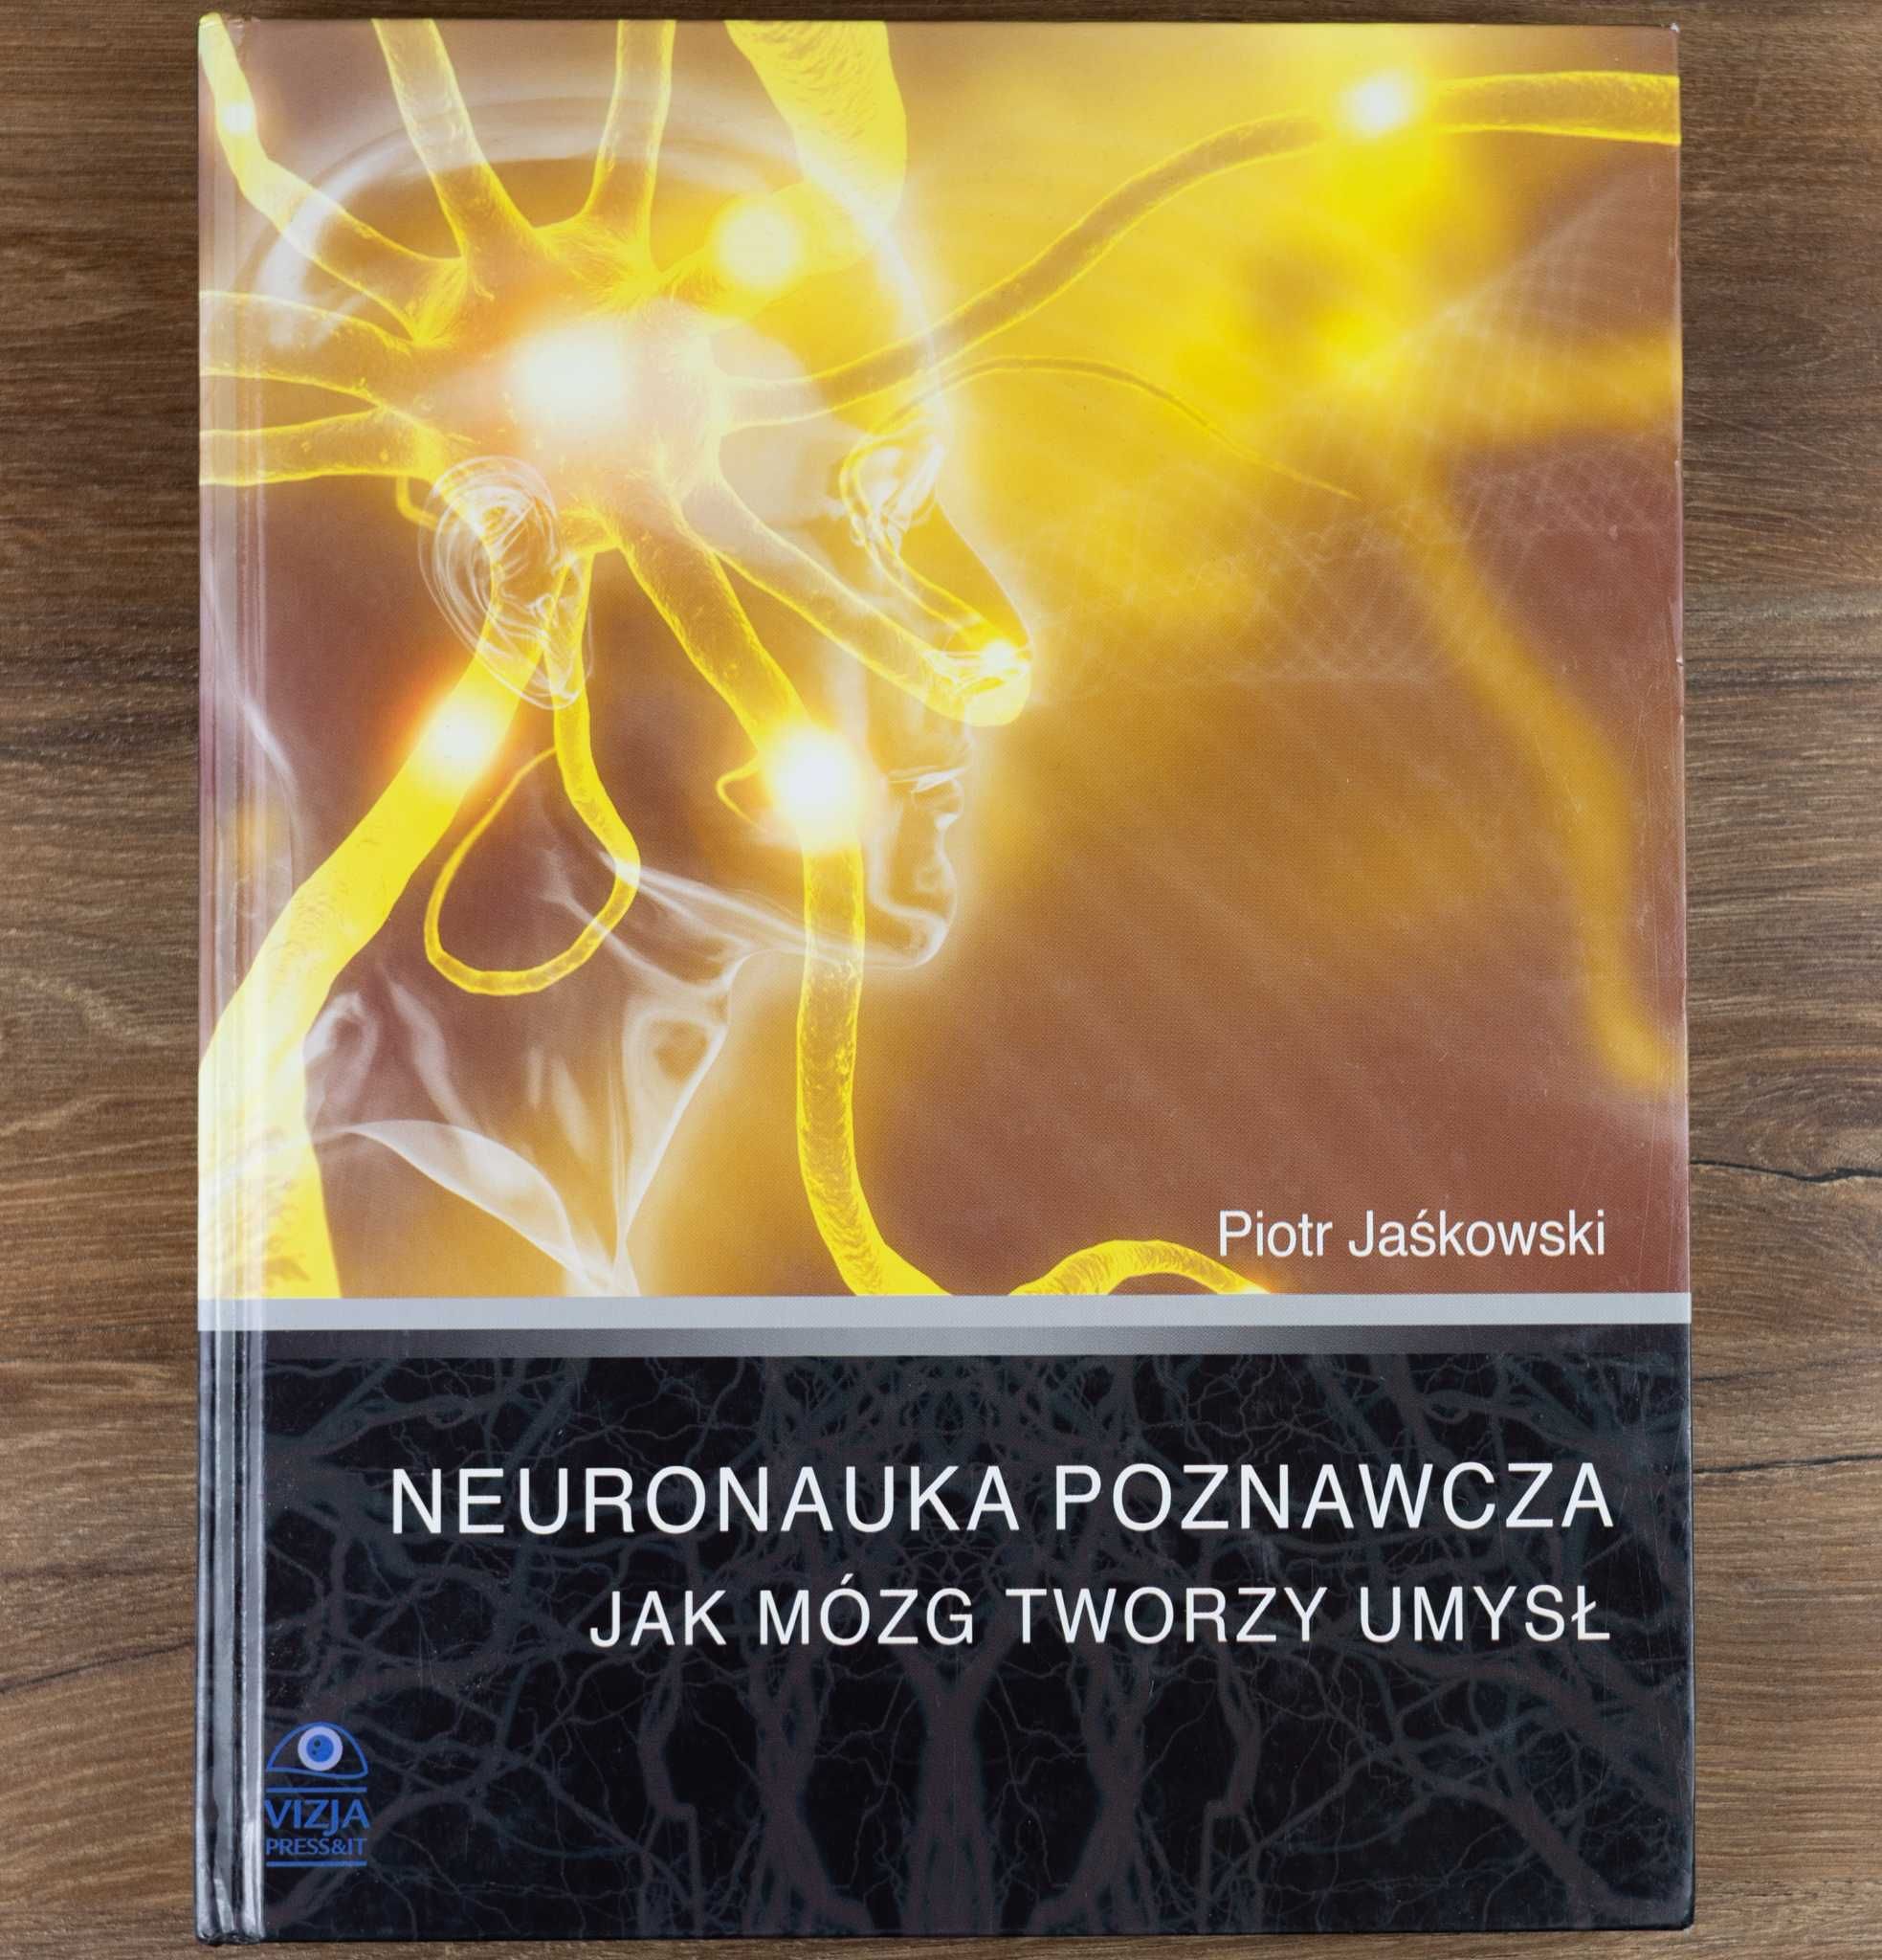 Neuronauka poznawcza Piotr Jaśkowski Książka Unikat